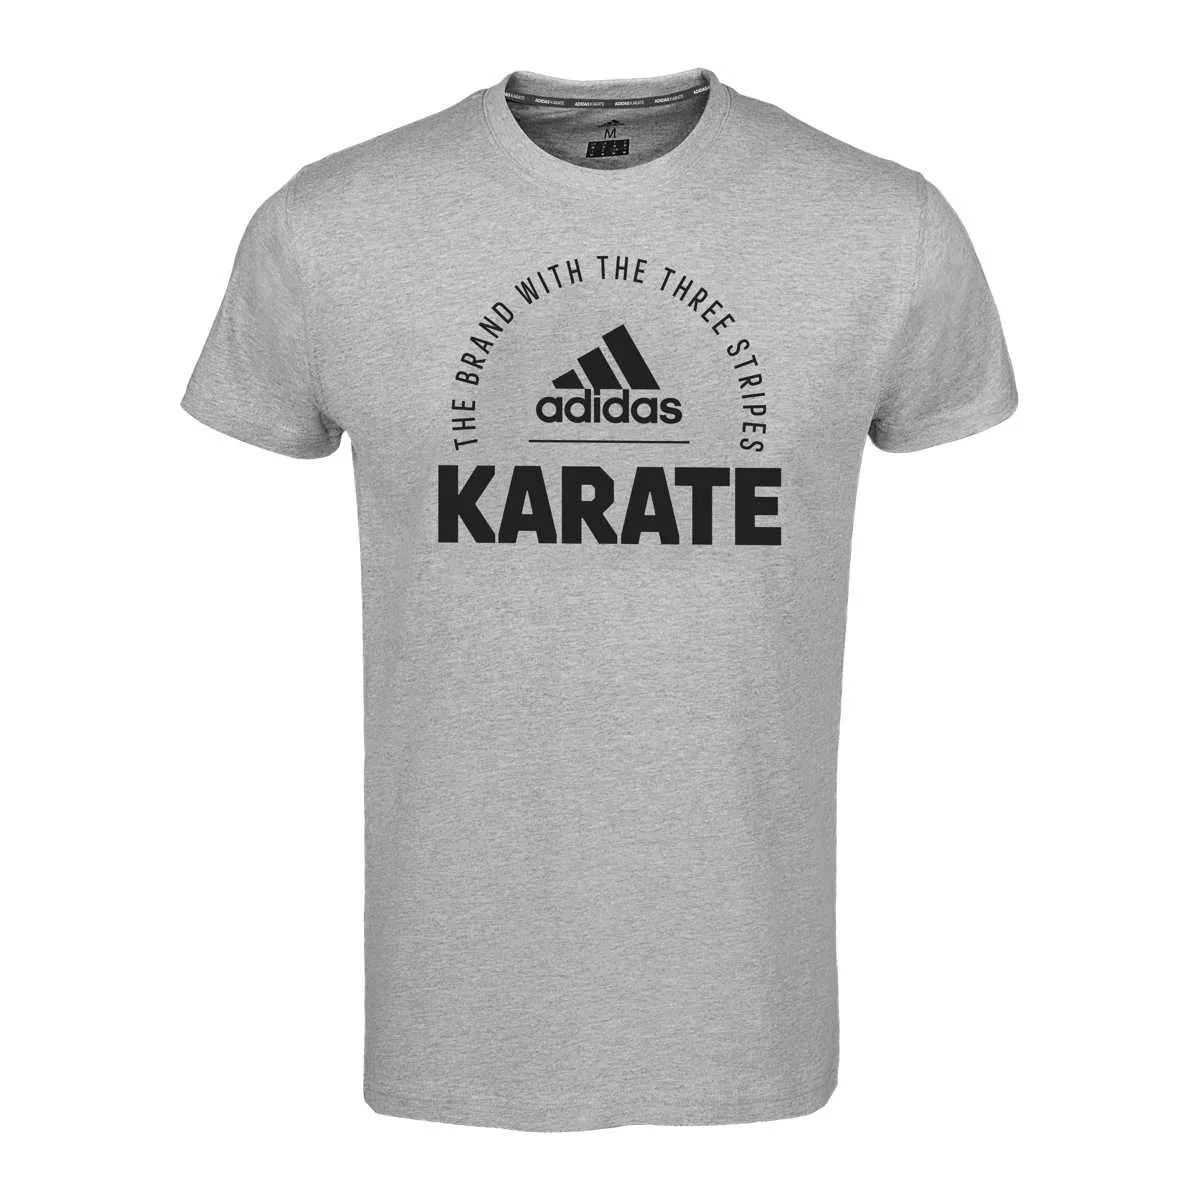 Camiseta adidas Karate gris Comunidad